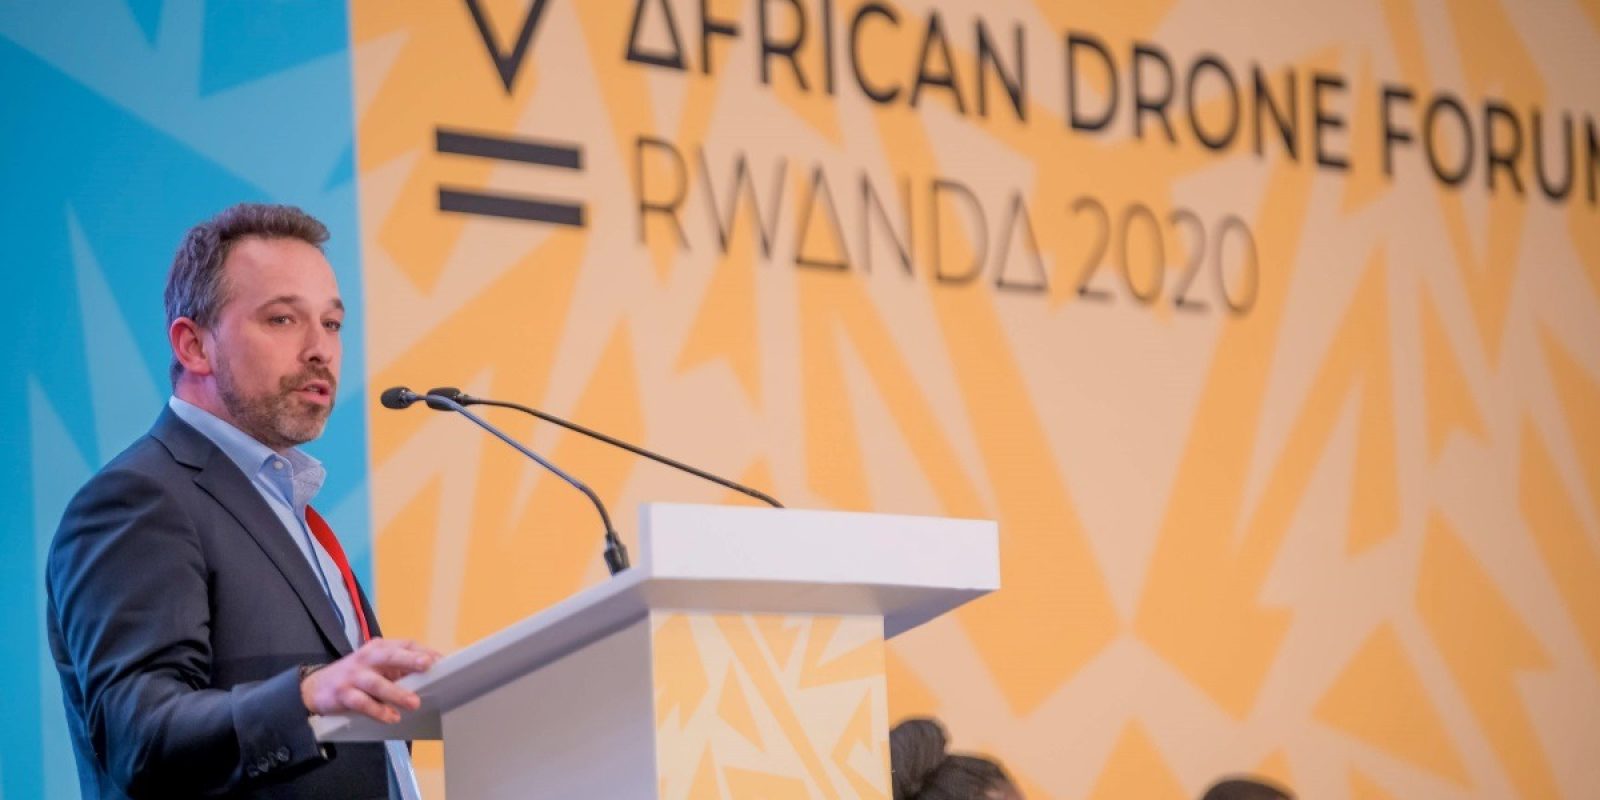 Tom Verbruggen, CEO Aviatize (https://aviatize.com/) als spreker tijdens de 202 African Drone Forum. Tom: “Robuust, flexibel en vooral efficient – in Afrika wordt het Belgische Aviatize als sterke automatiseringspartner op handen gedragen.”